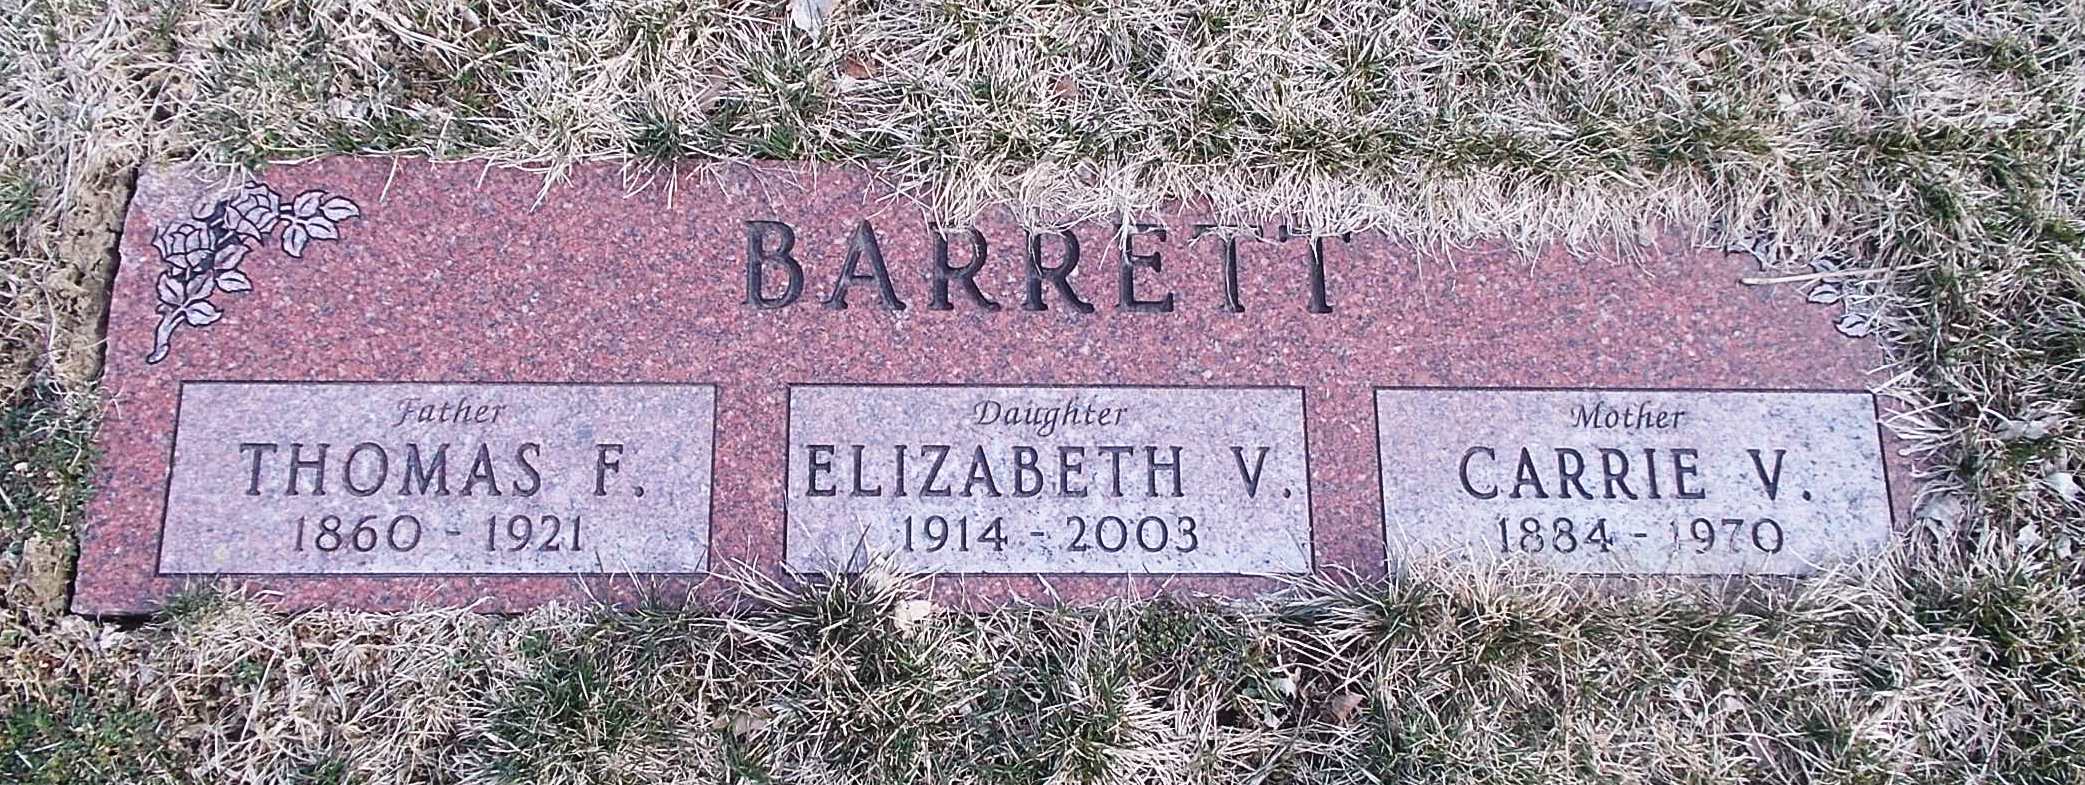 Elizabeth V Barrett